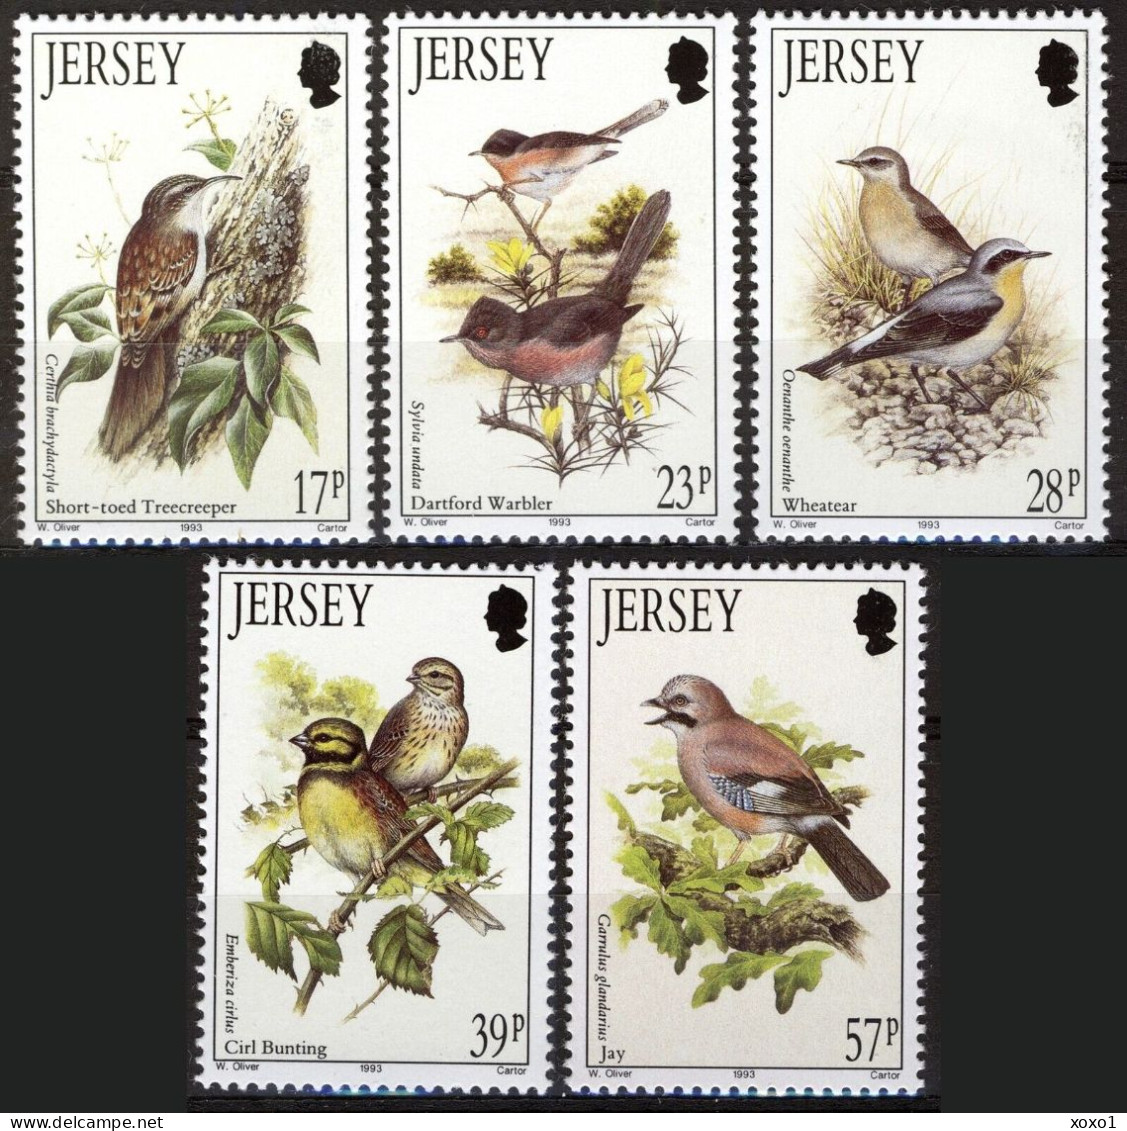 Jersey 1993 MiNr. 630 - 634 Migratory Birds (I) 5v MNH** 8,50 € - Jersey